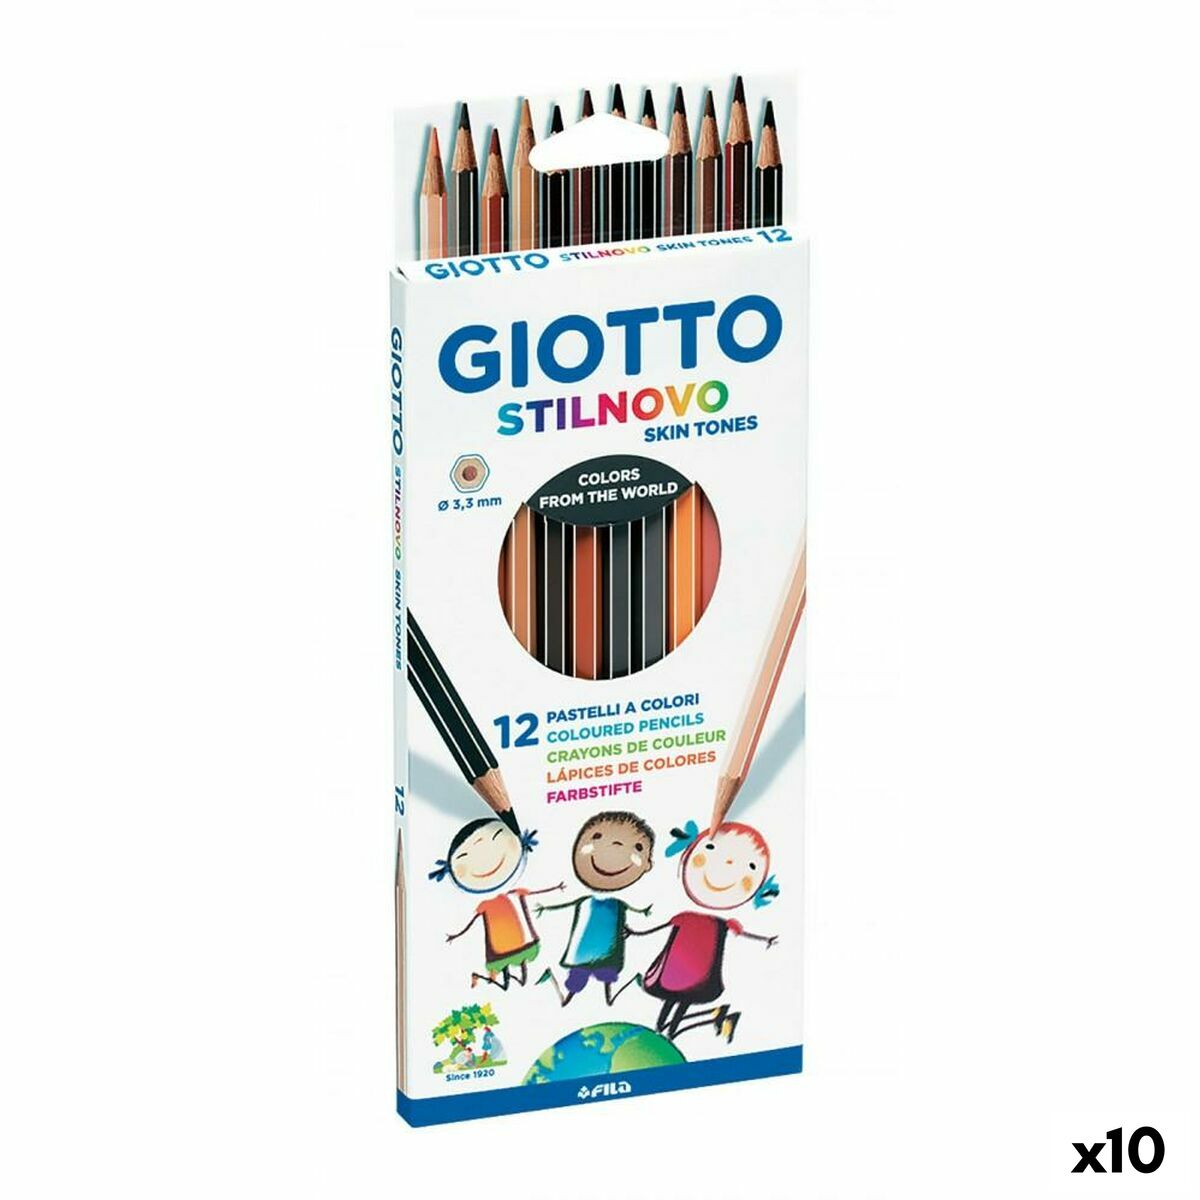 Crayons de couleur Giotto Stilnovo Skin Tones Multicouleur (10 Unités)